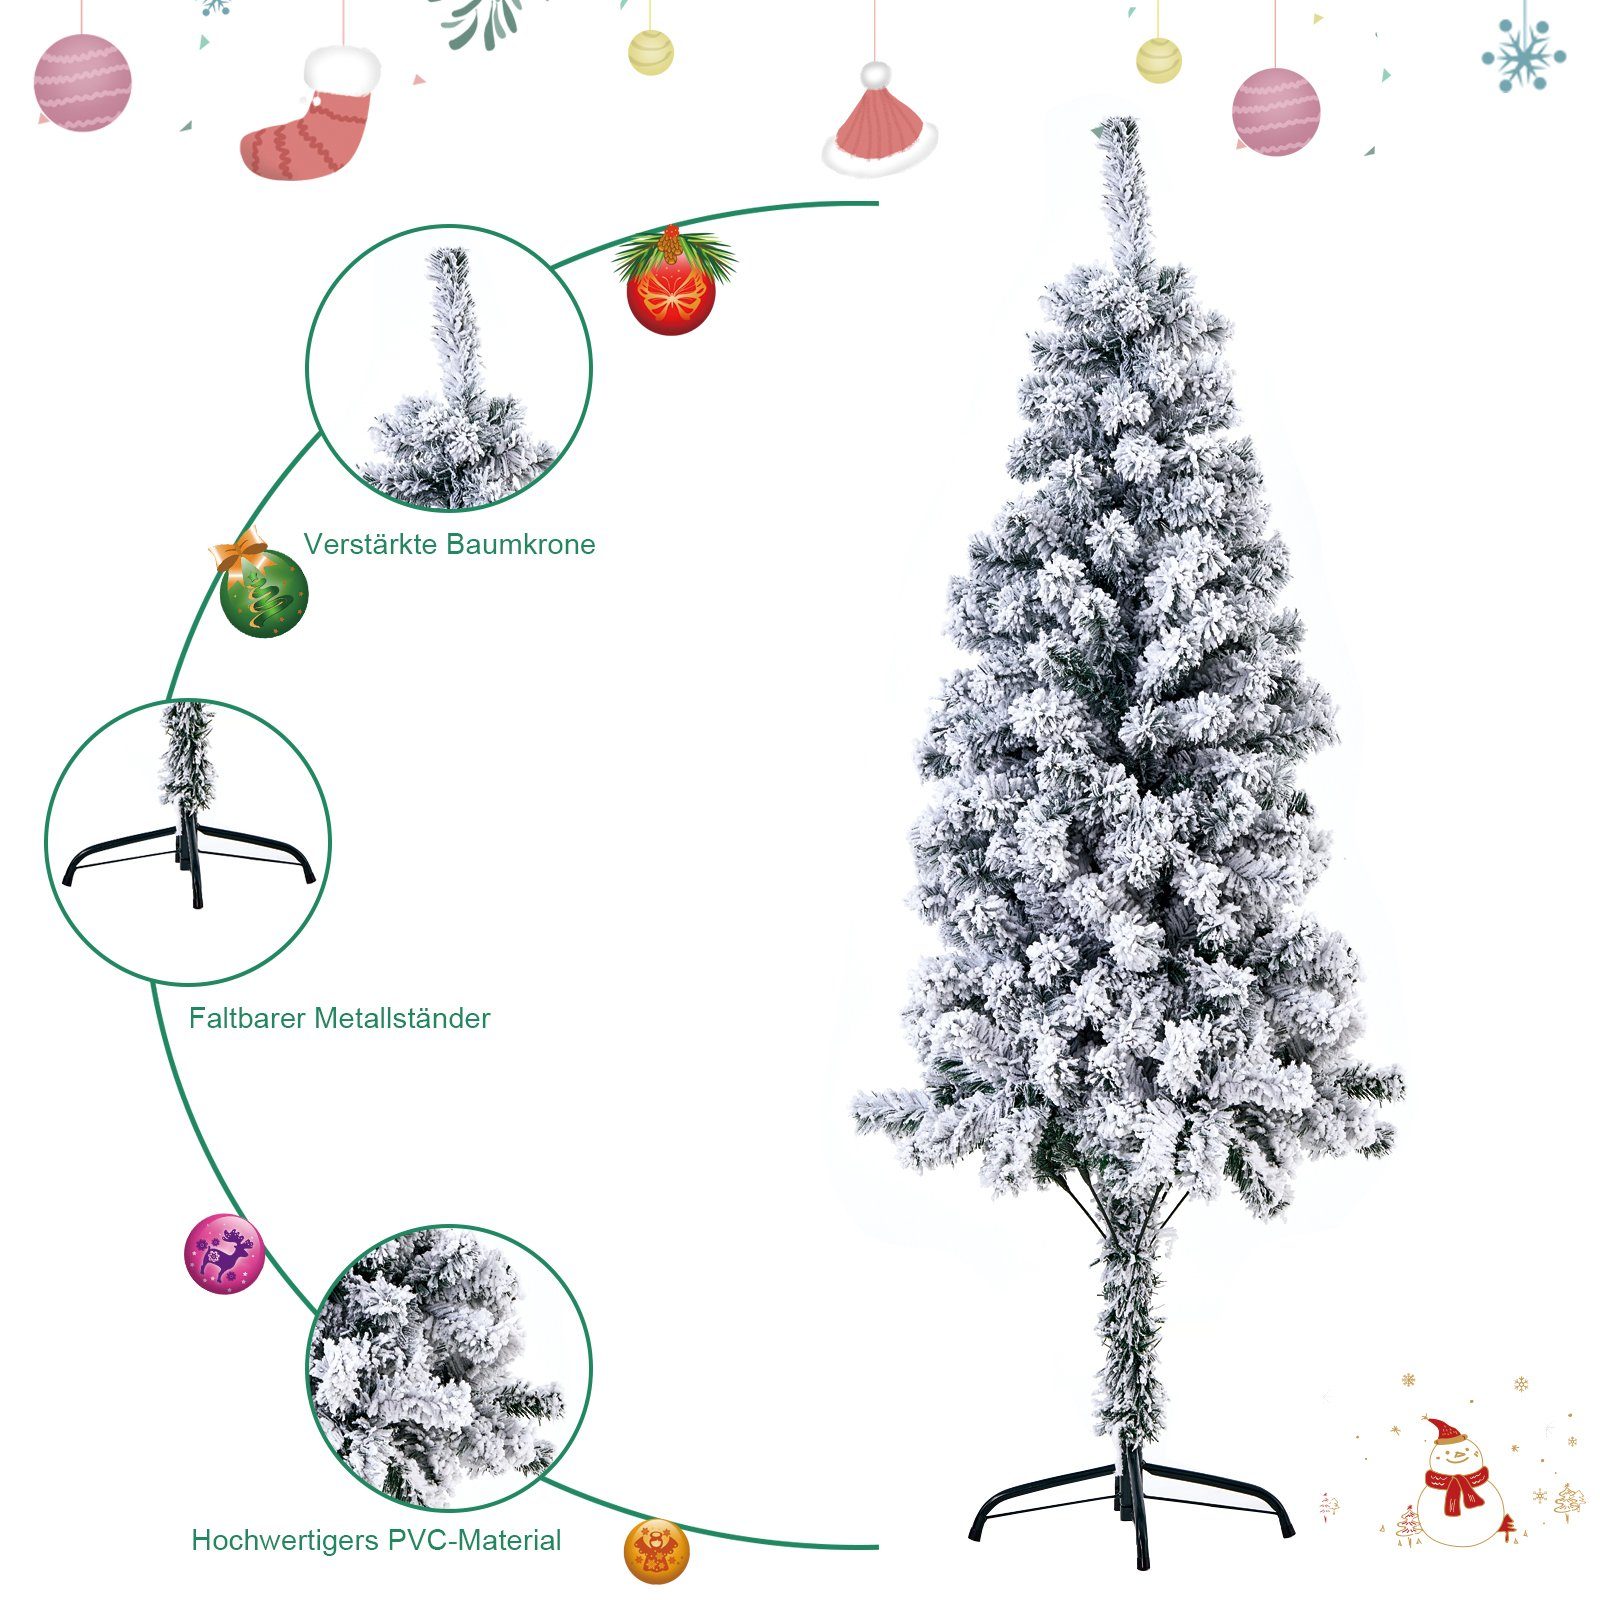 Tannenbaum,120cm/150cm BIGTREE Weihnachtsbaum Künstlicher Weihnachtsbaum